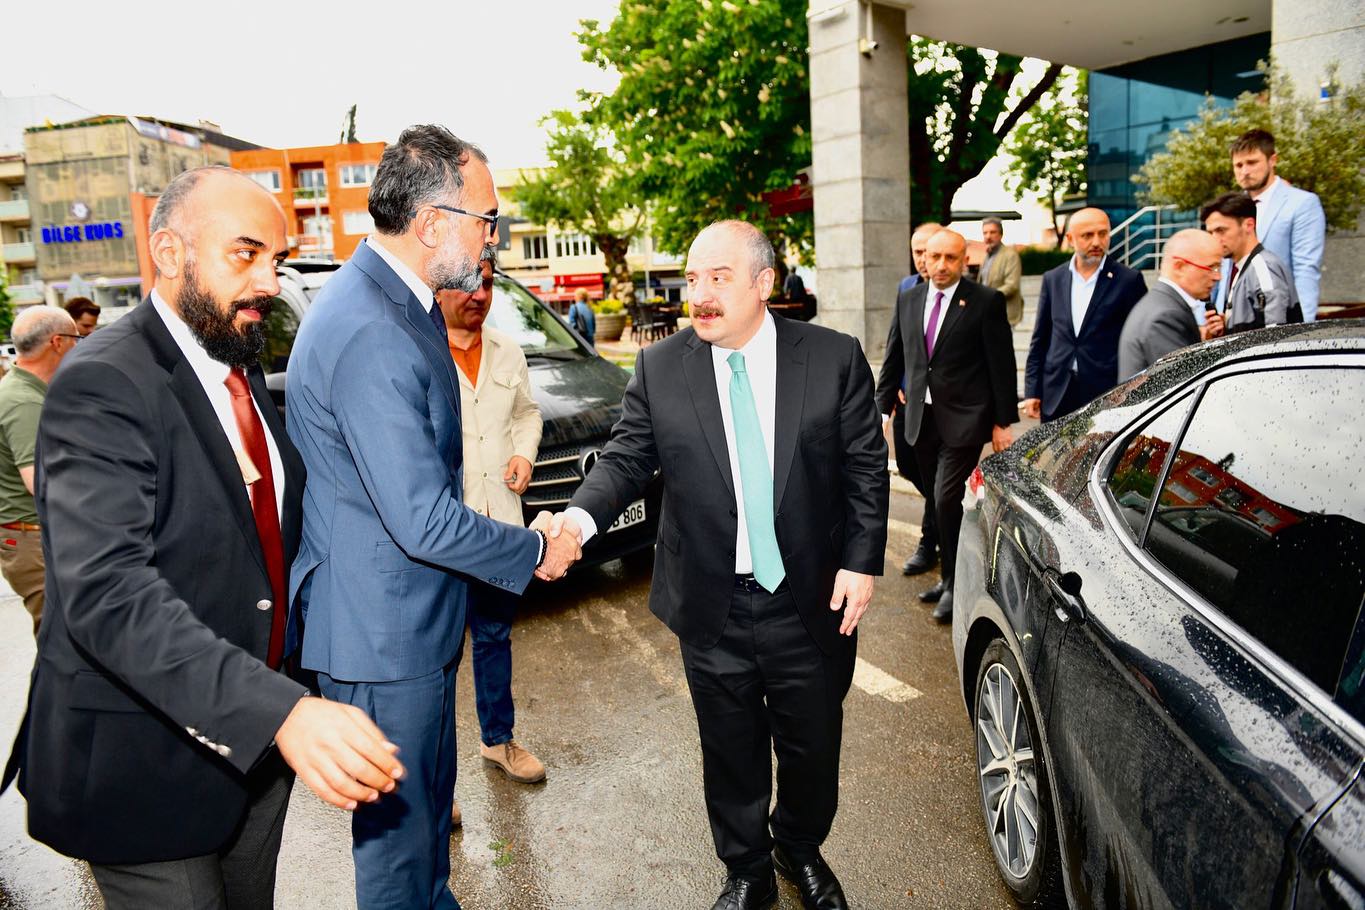 Kestel Belediye Başkanı, AK Parti Milletvekili ve İl Başkanı ile bir araya geldi.